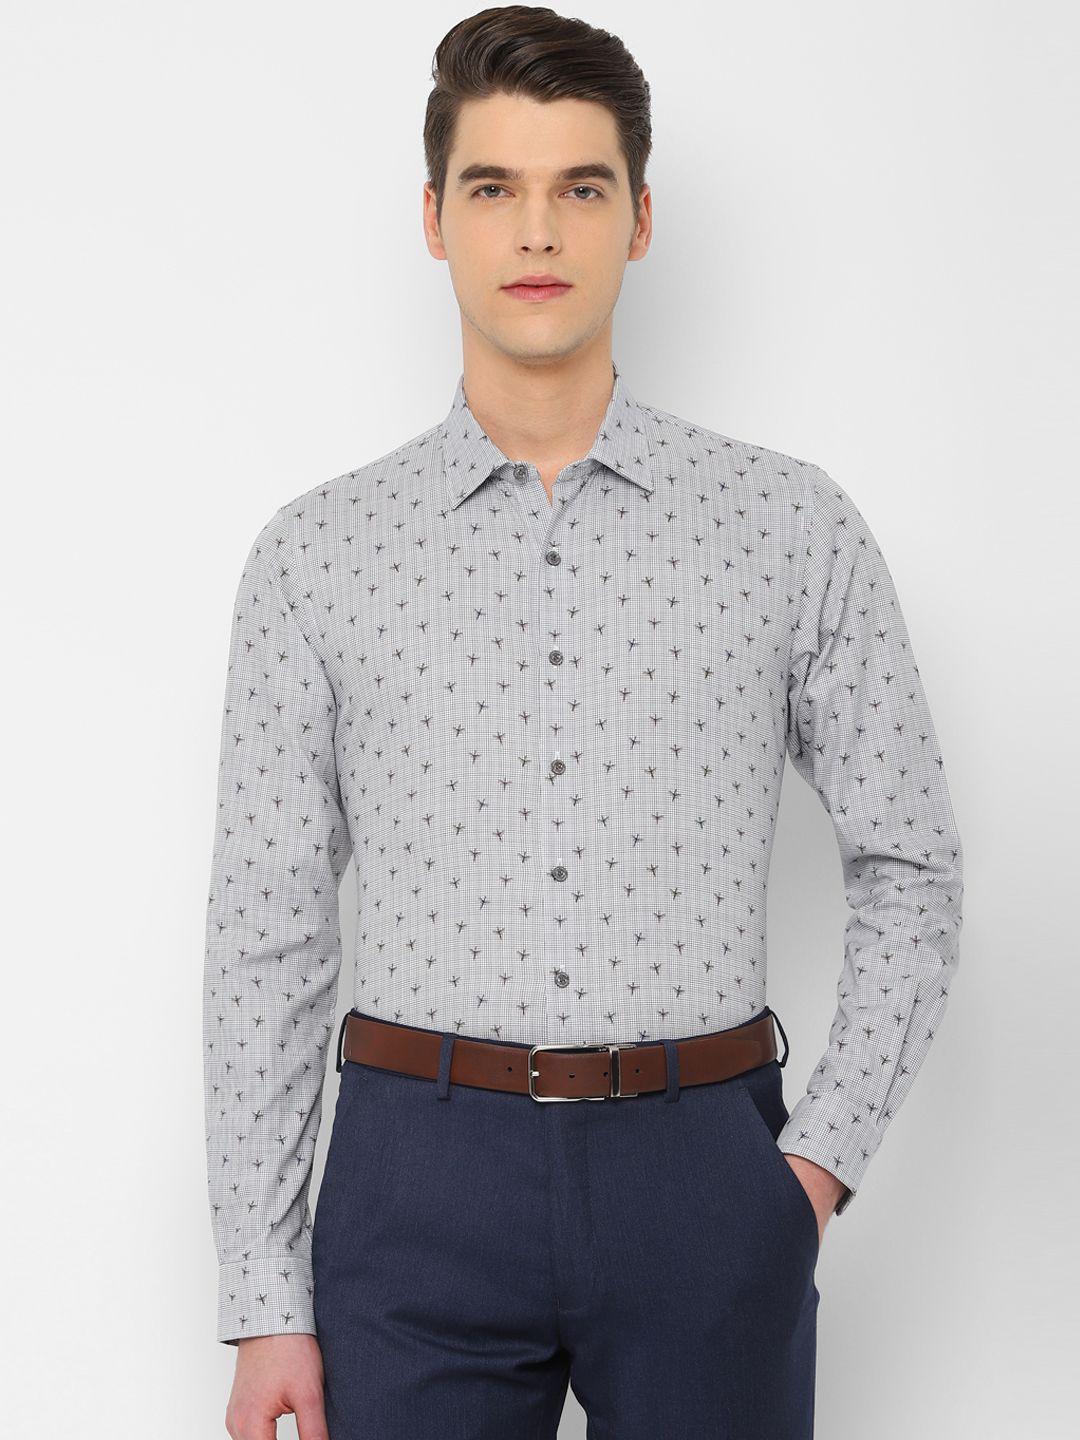 simon carter london men white & grey regular fit printed formal shirt